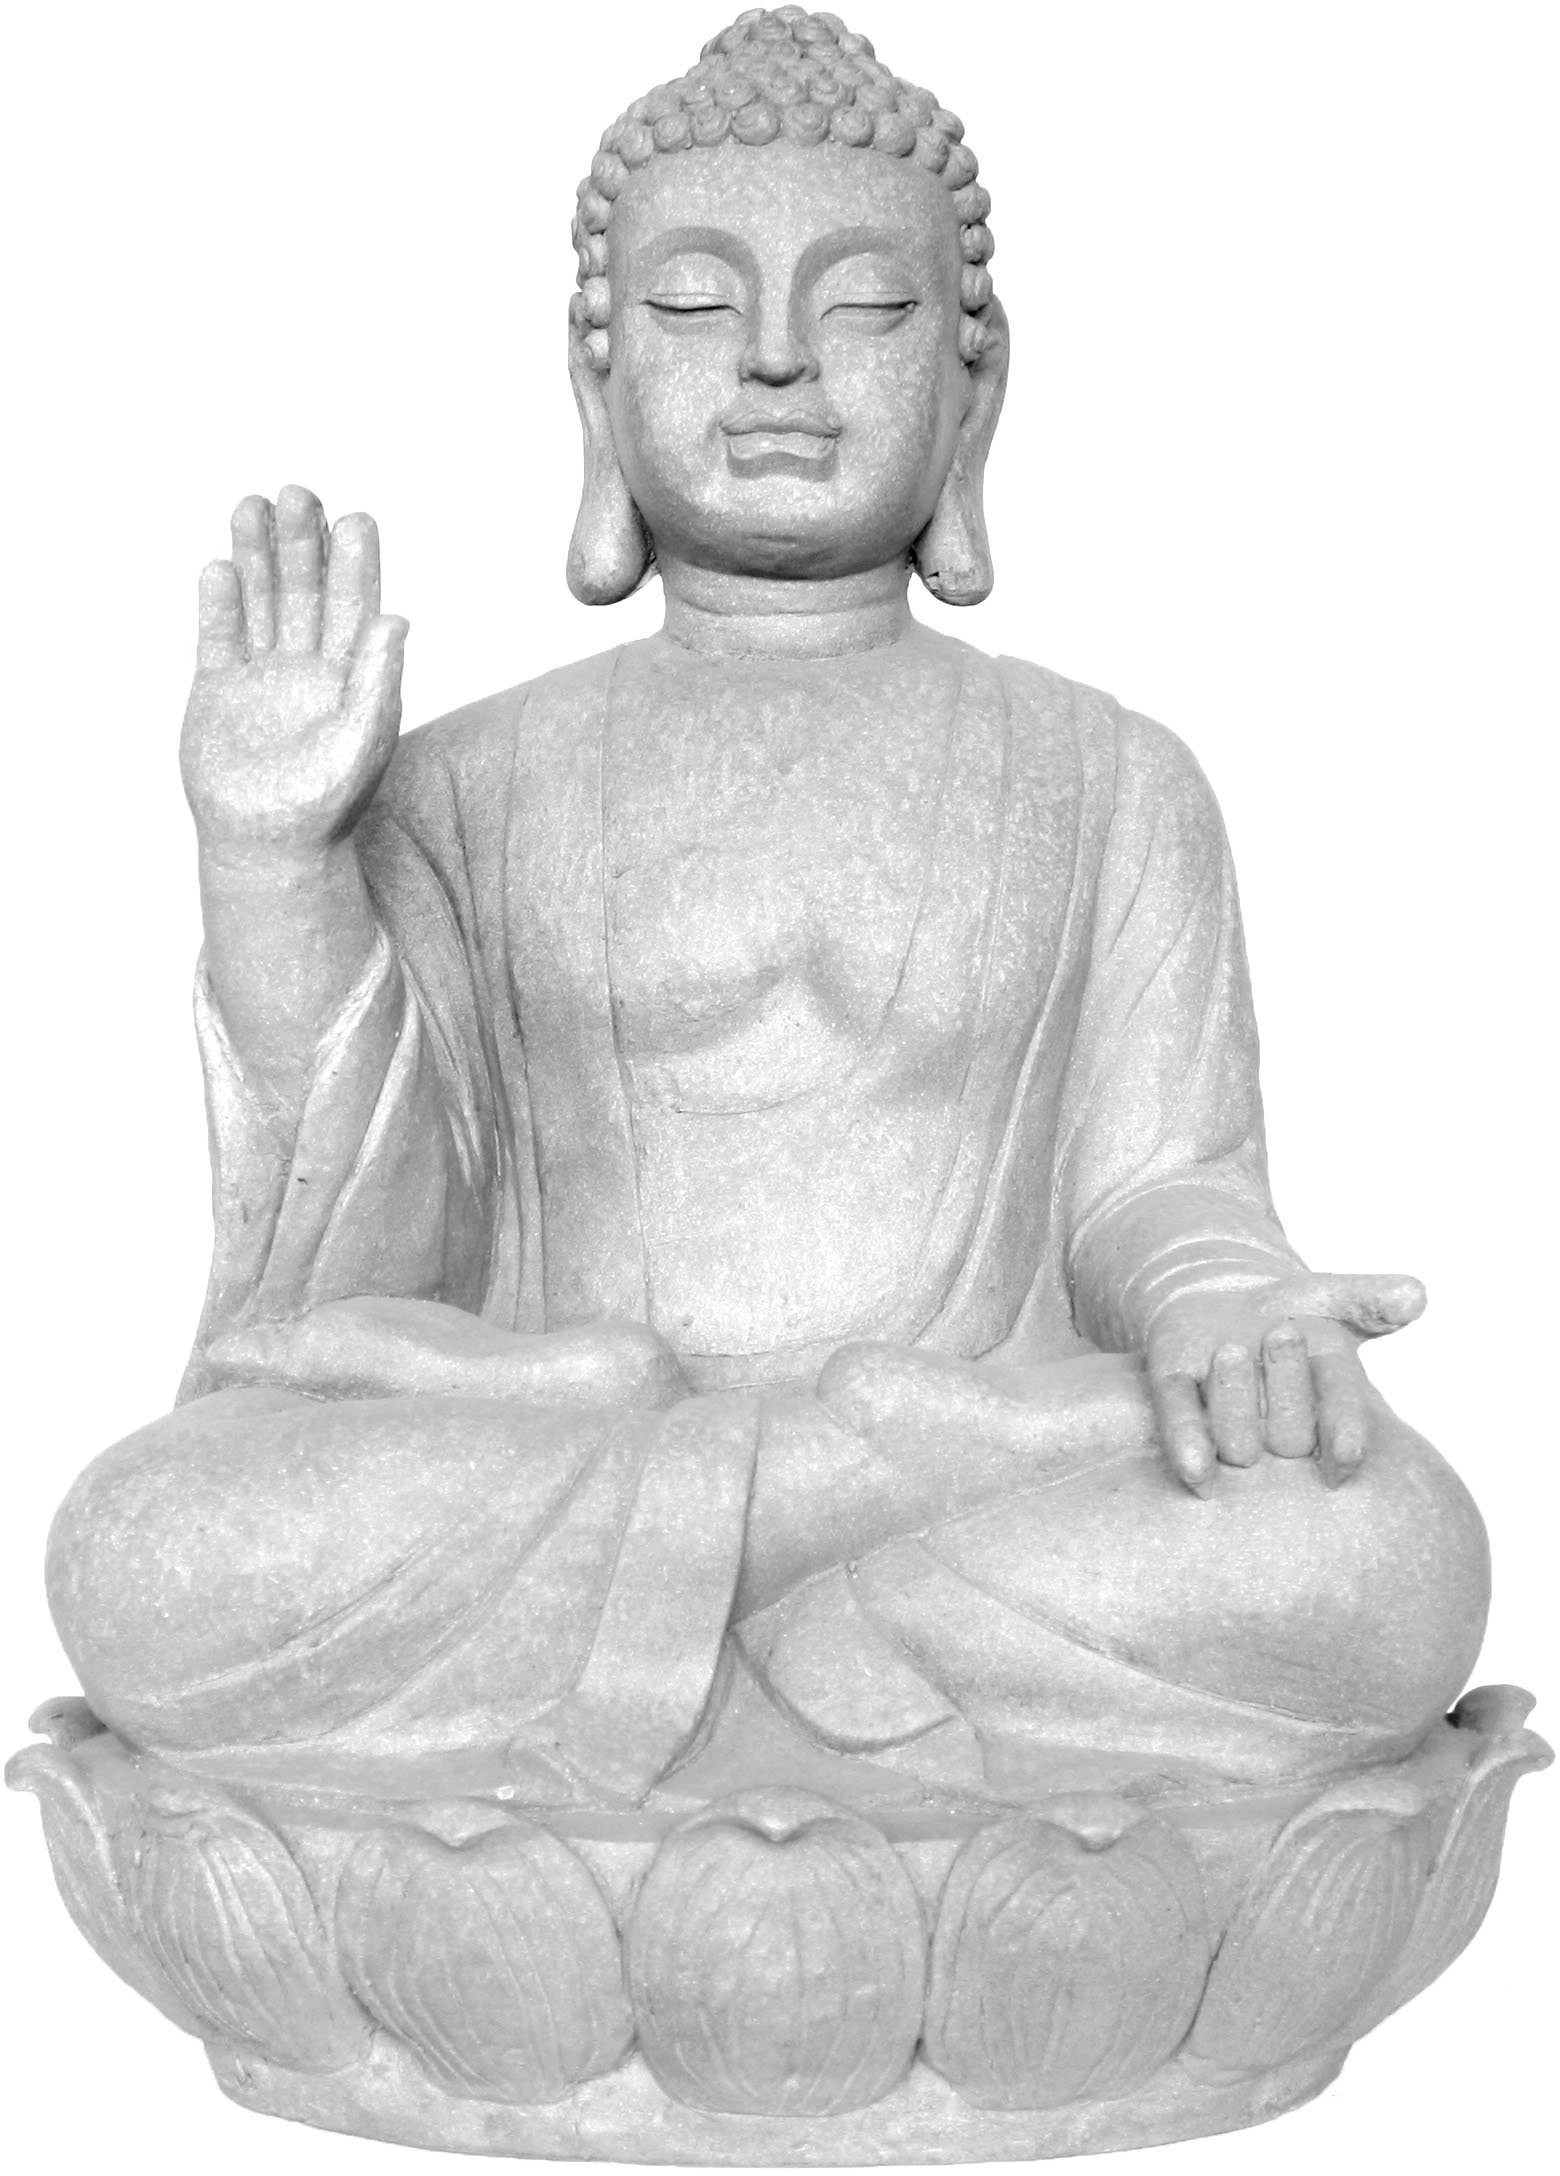 Deko-Figur Tian Tan Buddha 74 cm kaufen bei OBI